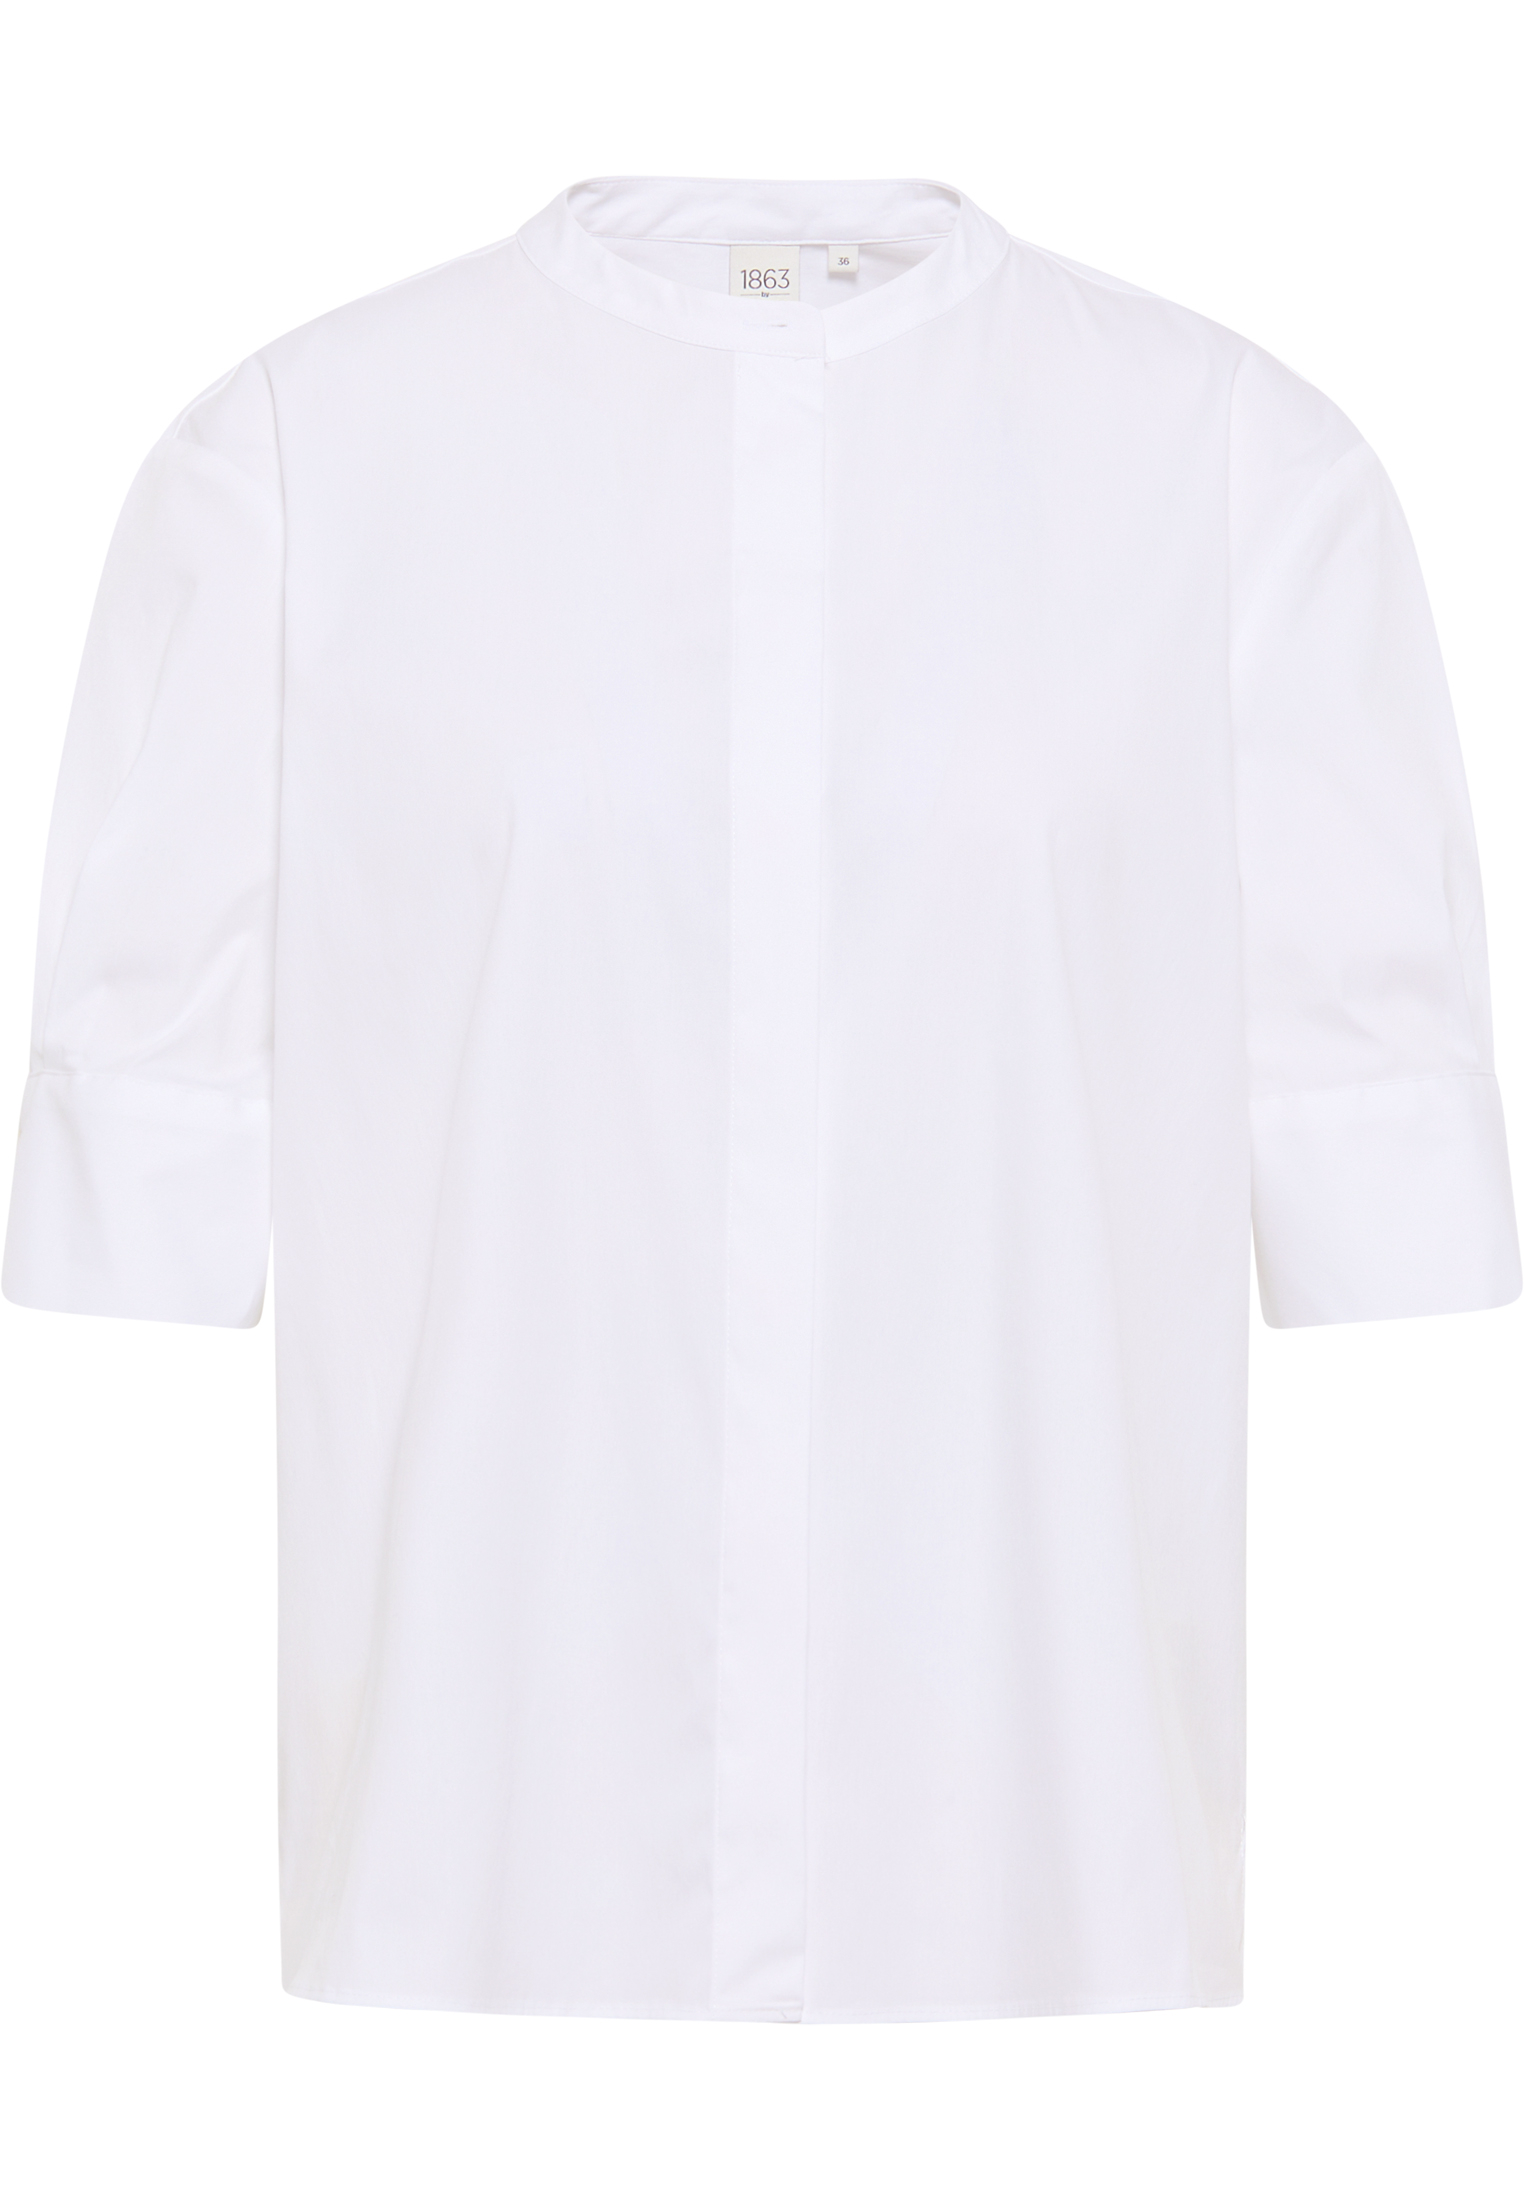 Signature Shirt blanc uni